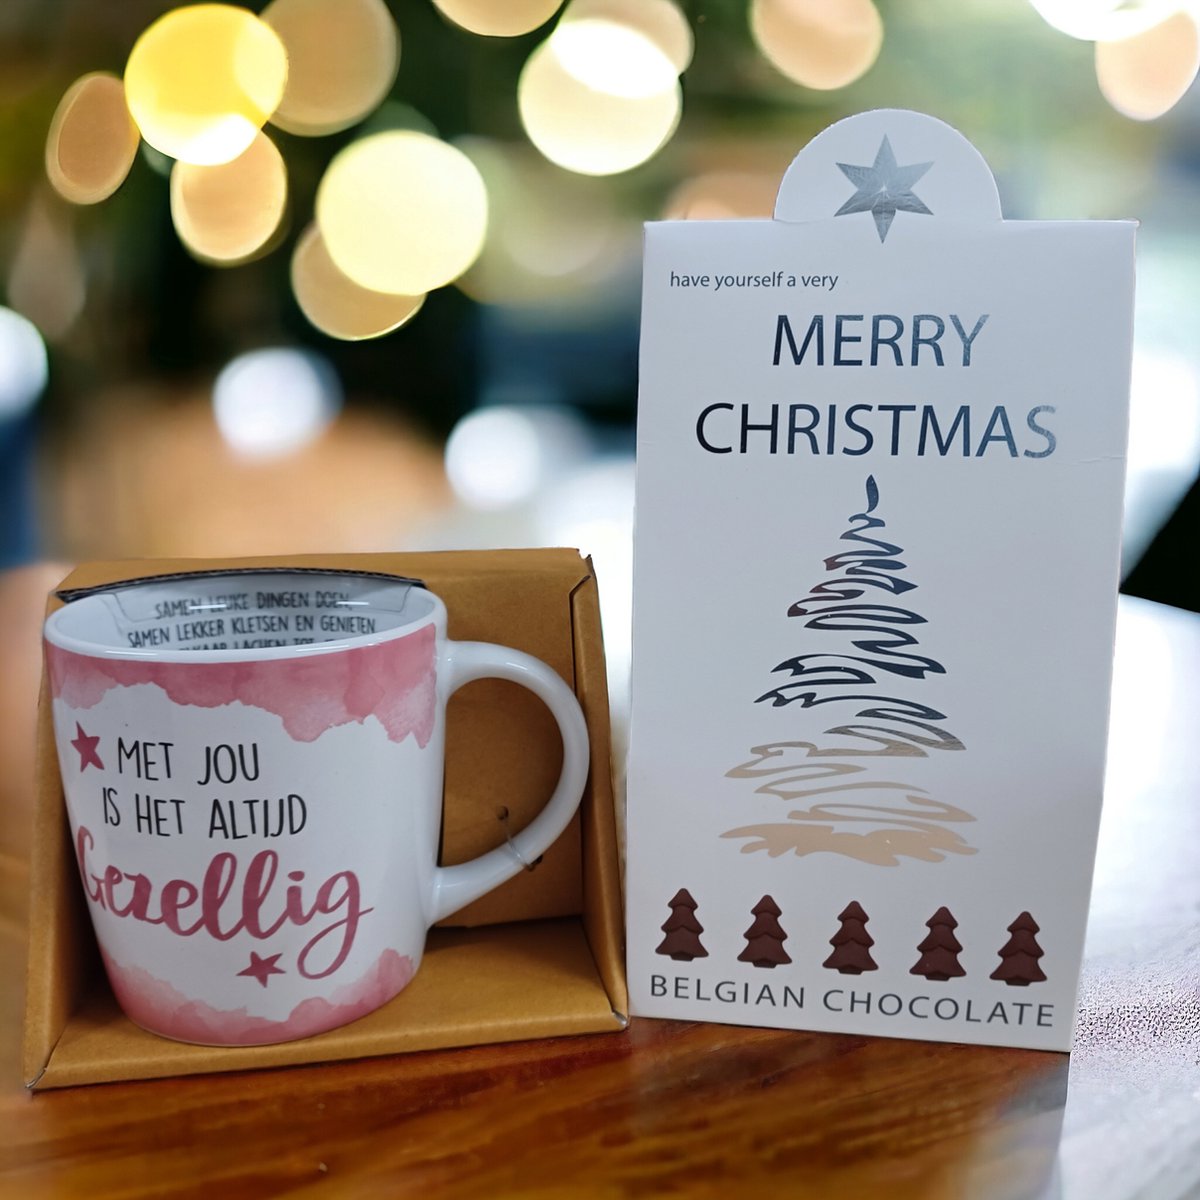 Met jou is het altijd gezellig-Kerstcadeau-Kerstpakket-Giftset-December Cadeau-Merry Christmas-Happy New Year-Belgische Chocolade-Champagne Flesjes-Kerst Chocolade-Zoetigheid-Mok-Beker-Magische dagen-Familiediner-Kerstdiner-Kerstfeest-Oudejaar